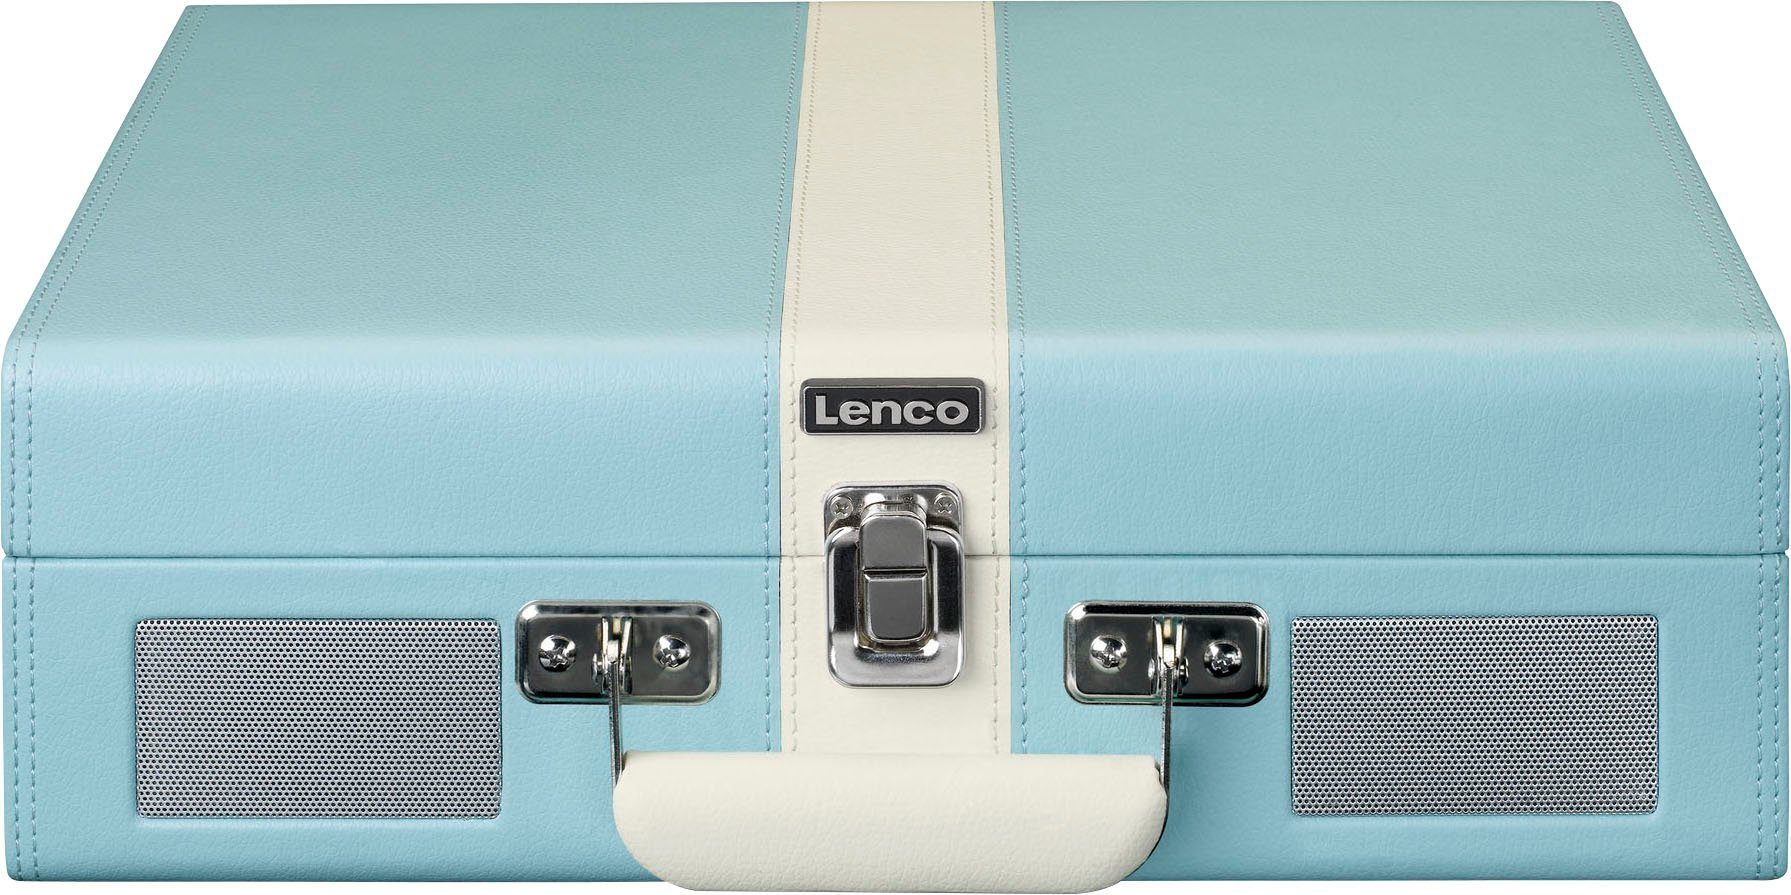 Lsp. Plattenspieler Lenco (Riemenantrieb) Koffer-Plattenspieler BT und mit eingebauten Blau-Weiß